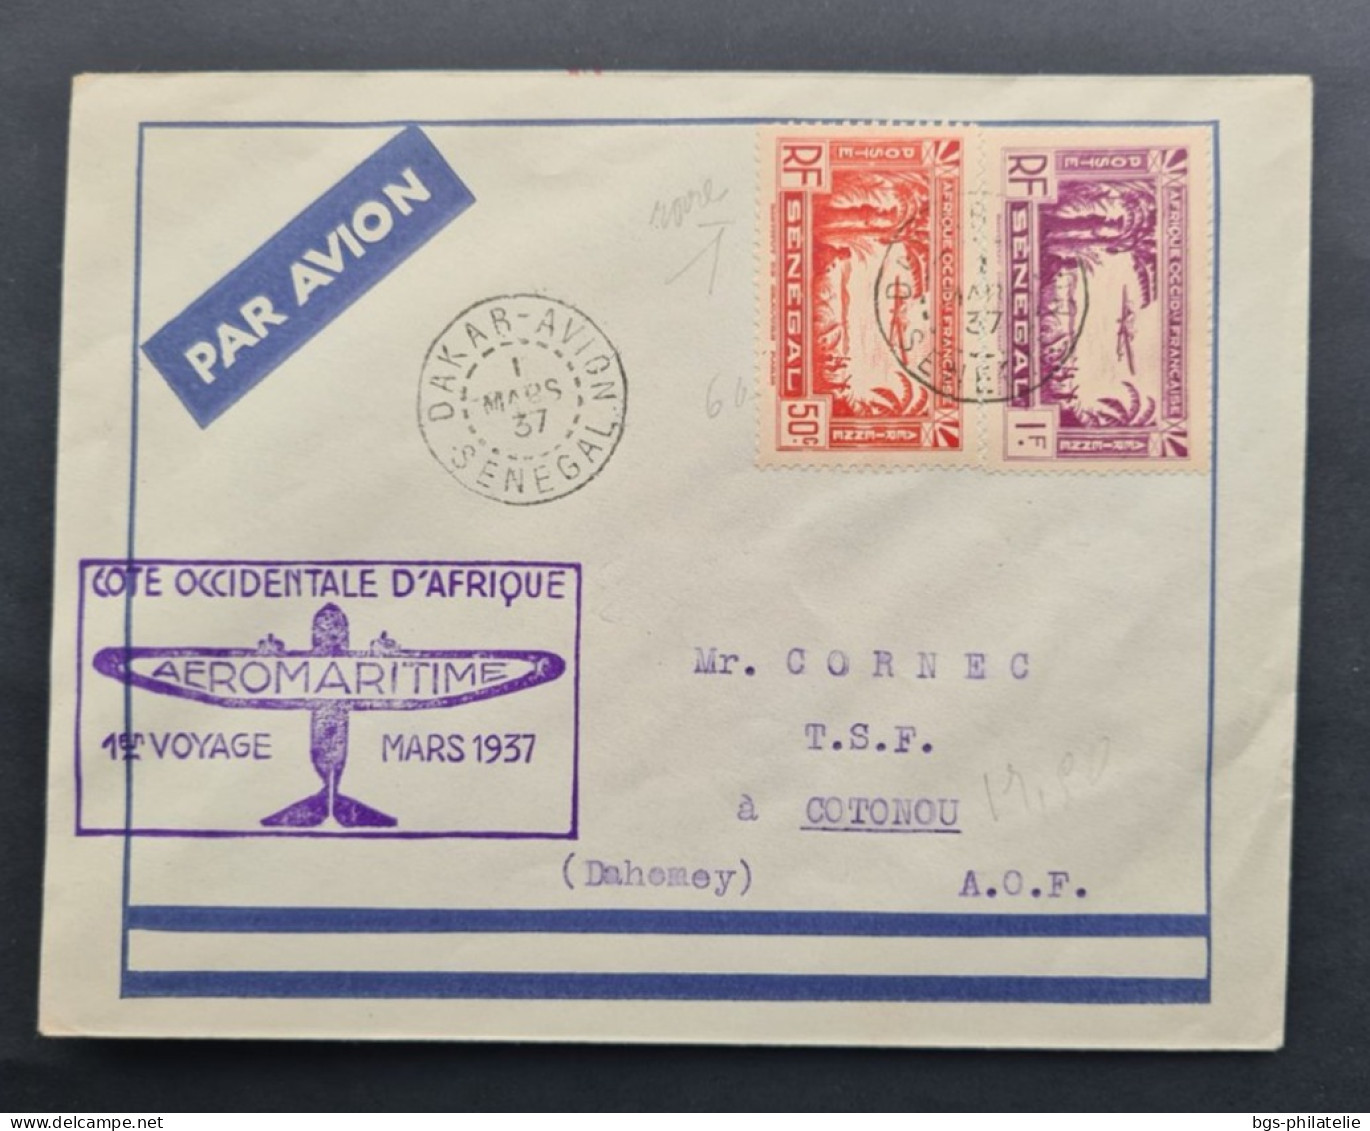 SÉNÉGAL,  Timbres Numéros PA2 Et PA3 Sur Lettre Avec Griffe Aéromaritime Cote Occidentale D'Afrique 1er Voyage Mars 1937 - Covers & Documents